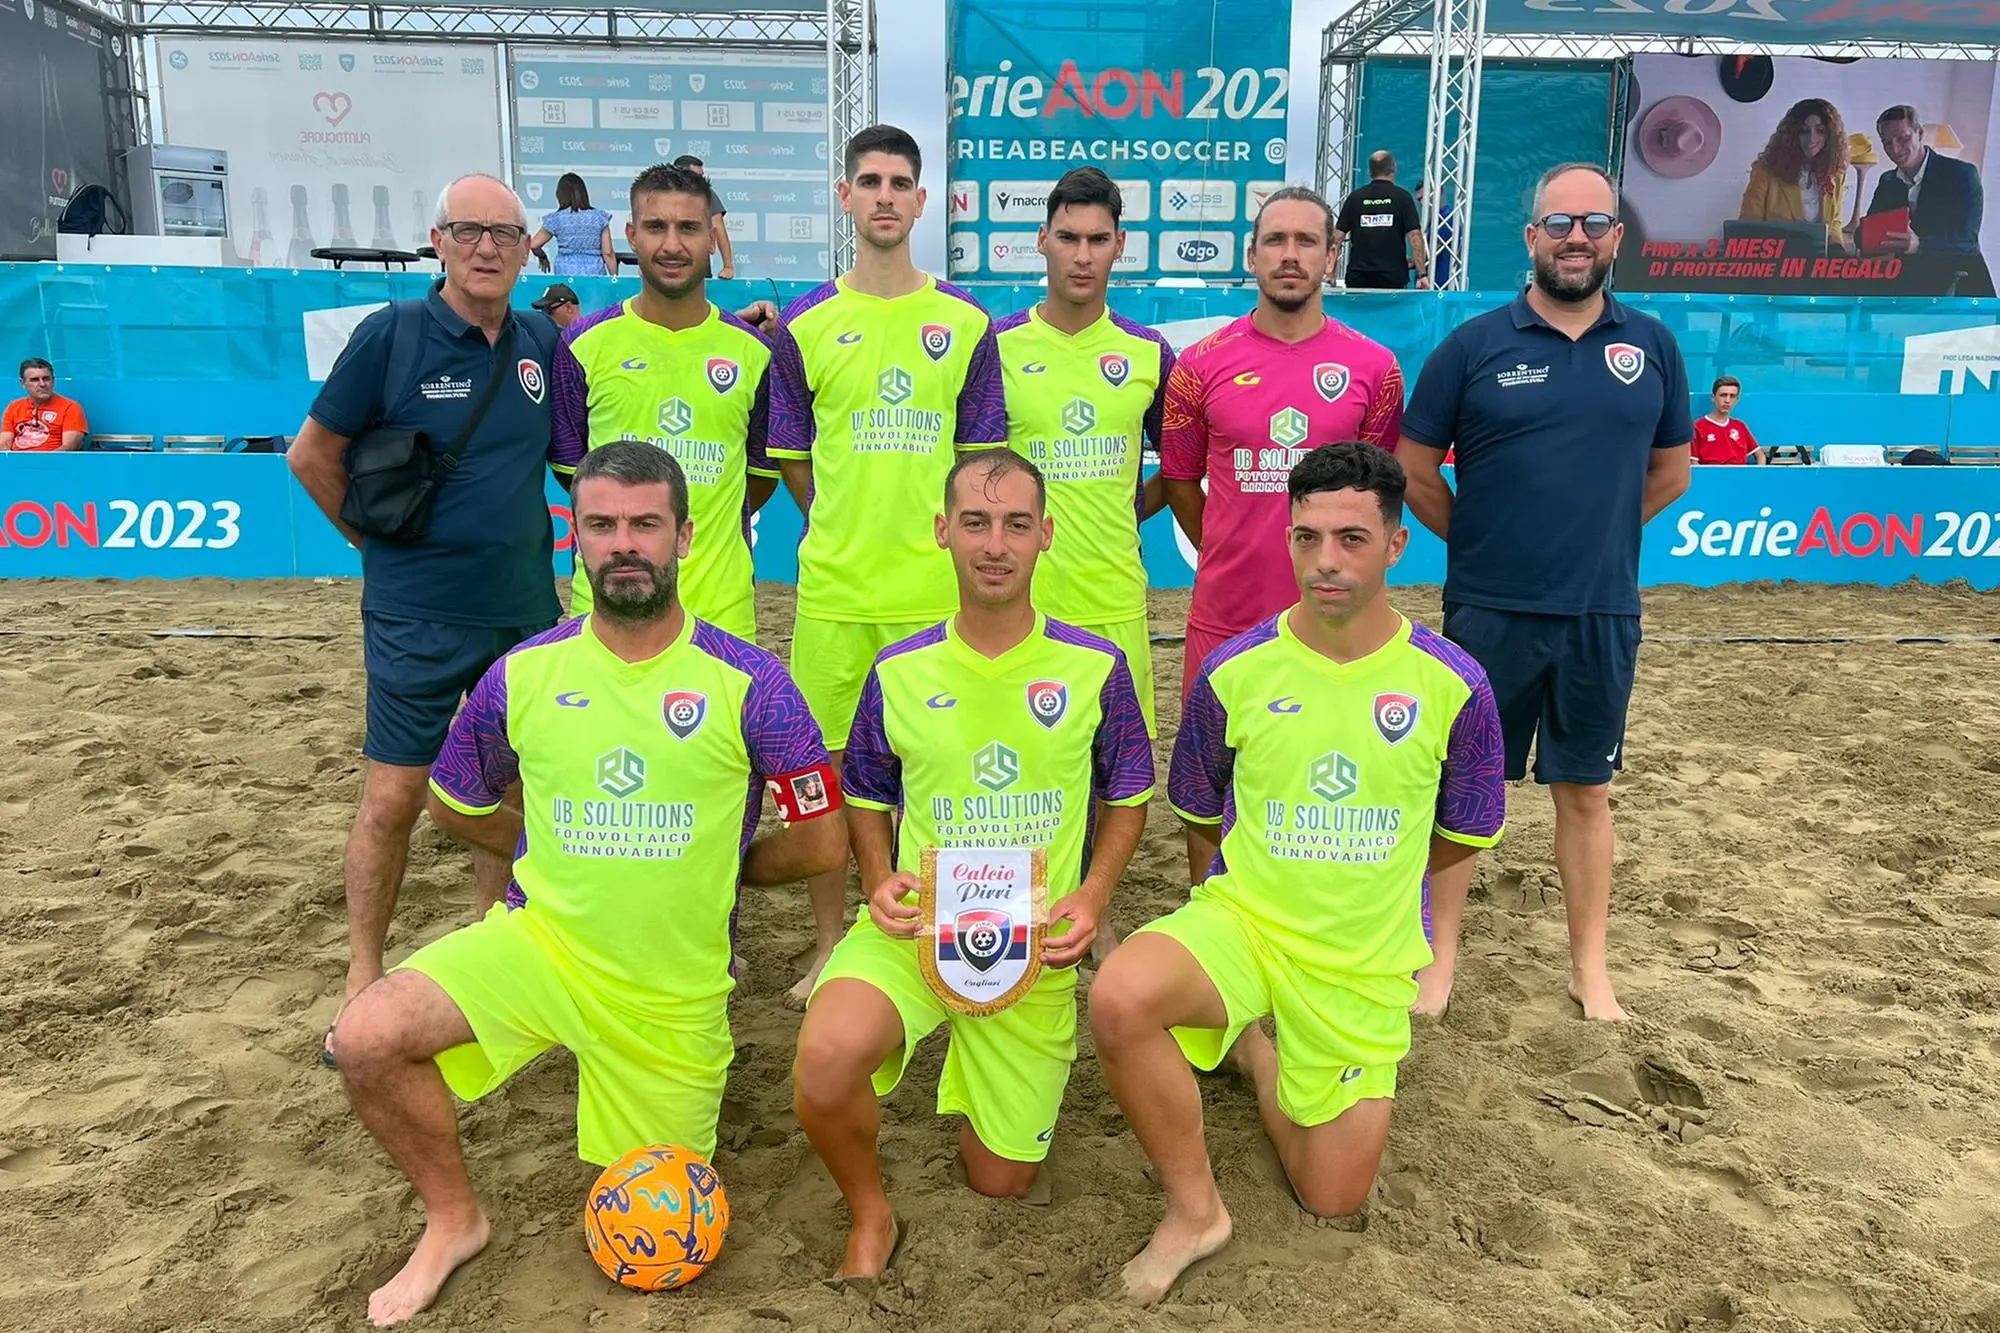 La squadra del Pirri in occasione della fase nazionale della Serie B di beach soccer dello scorso anno (foto concessa)